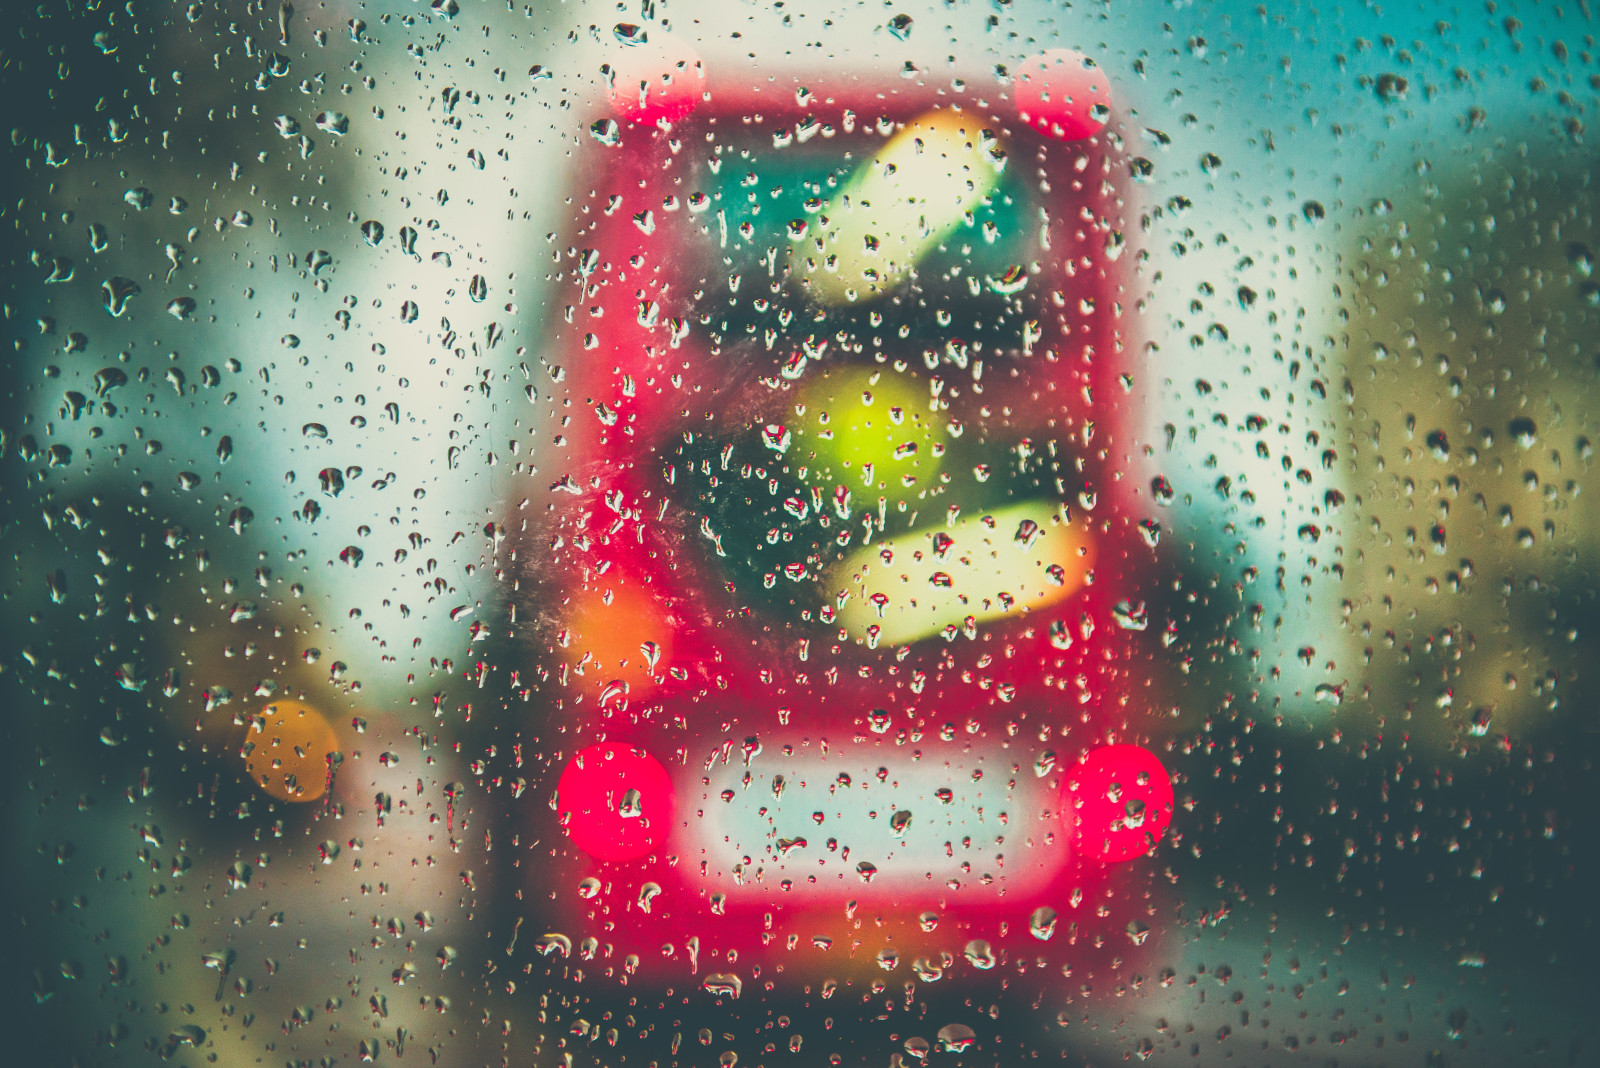 กระจก, ฝน, ยาหยอด, รถบัส